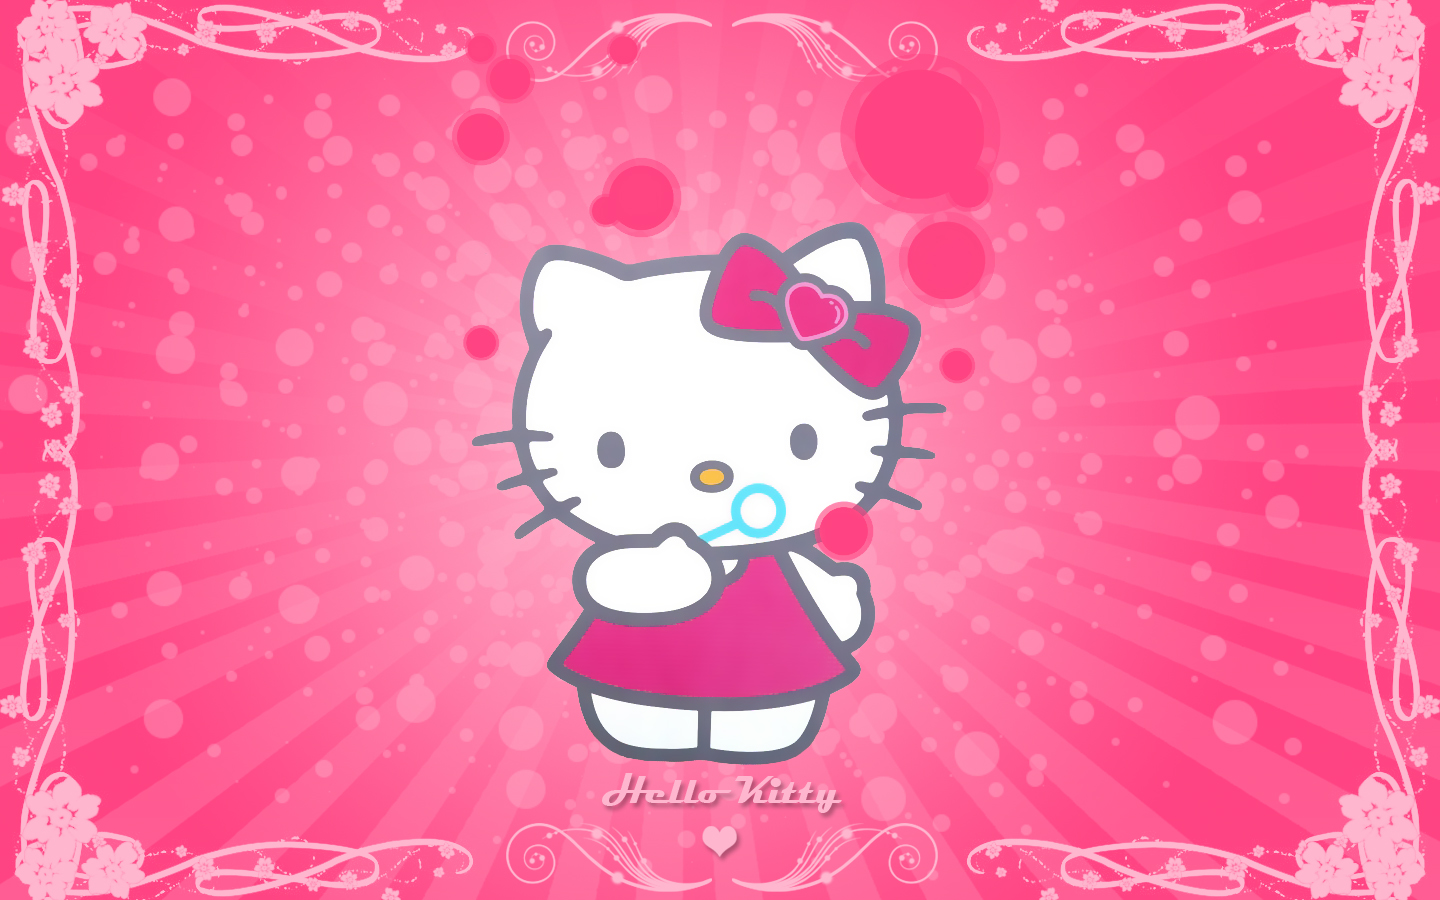 hello kitty wallpaper hello kitty wallpaper pink cute hello kitty